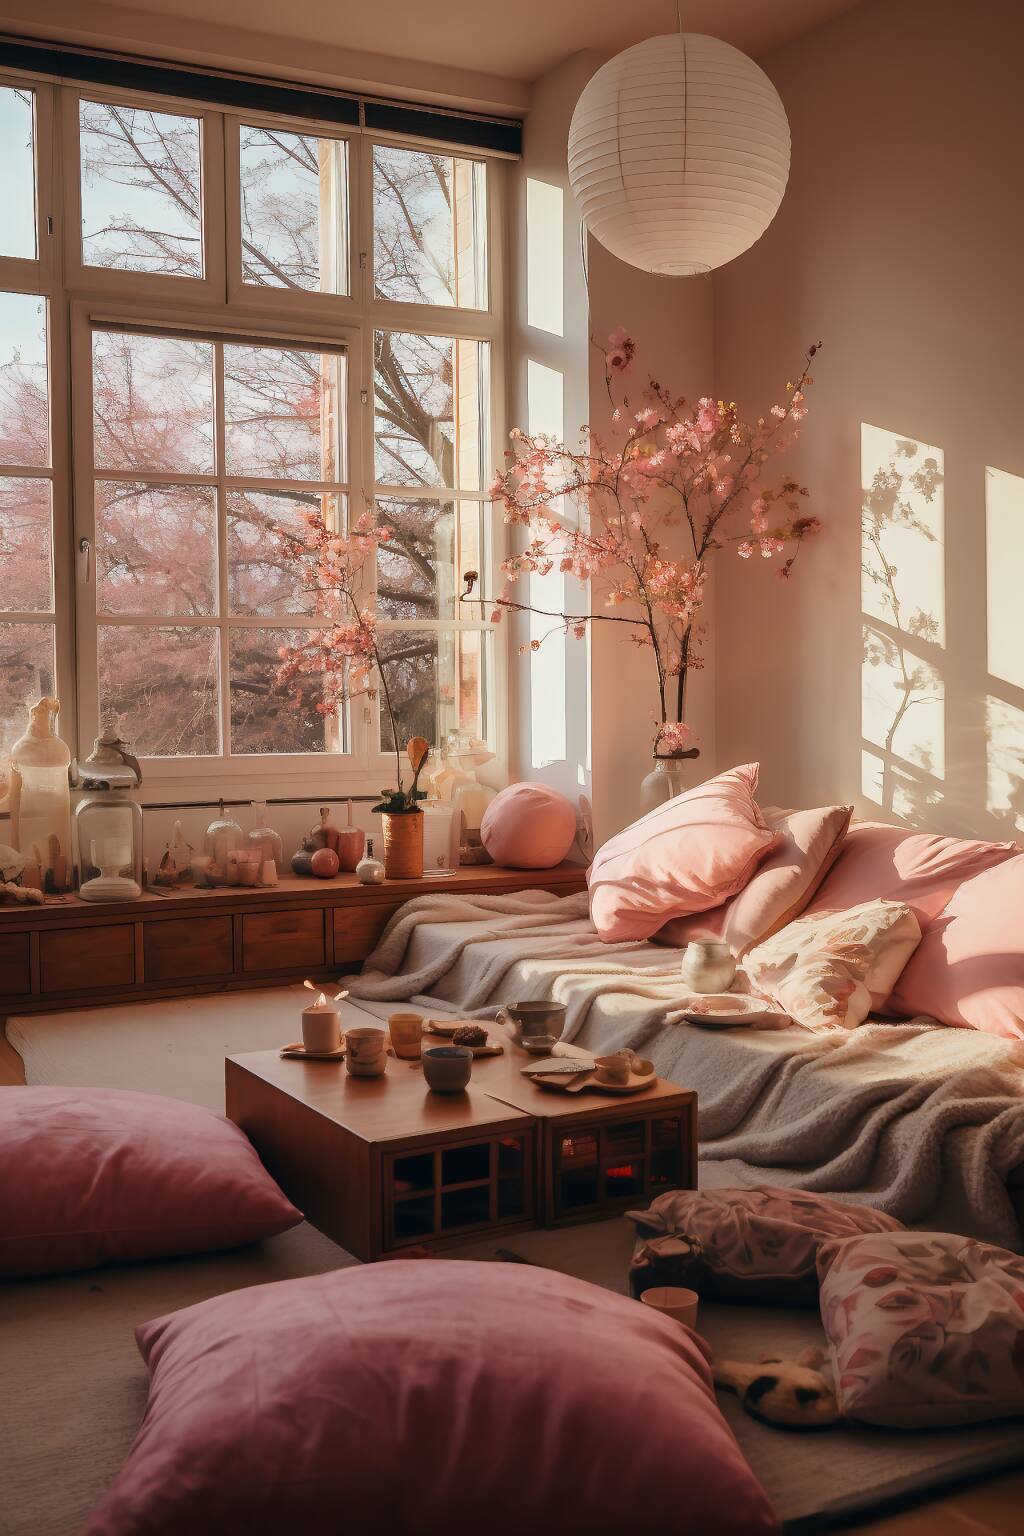 Ein Romantisches Und Ruhiges Wohnzimmer Mit Niedrigen Sitzmöbeln, Rosafarbenen Kissen, Kirschblüten Und Einem Warmen, Sonnenbeschienenen Ambiente.